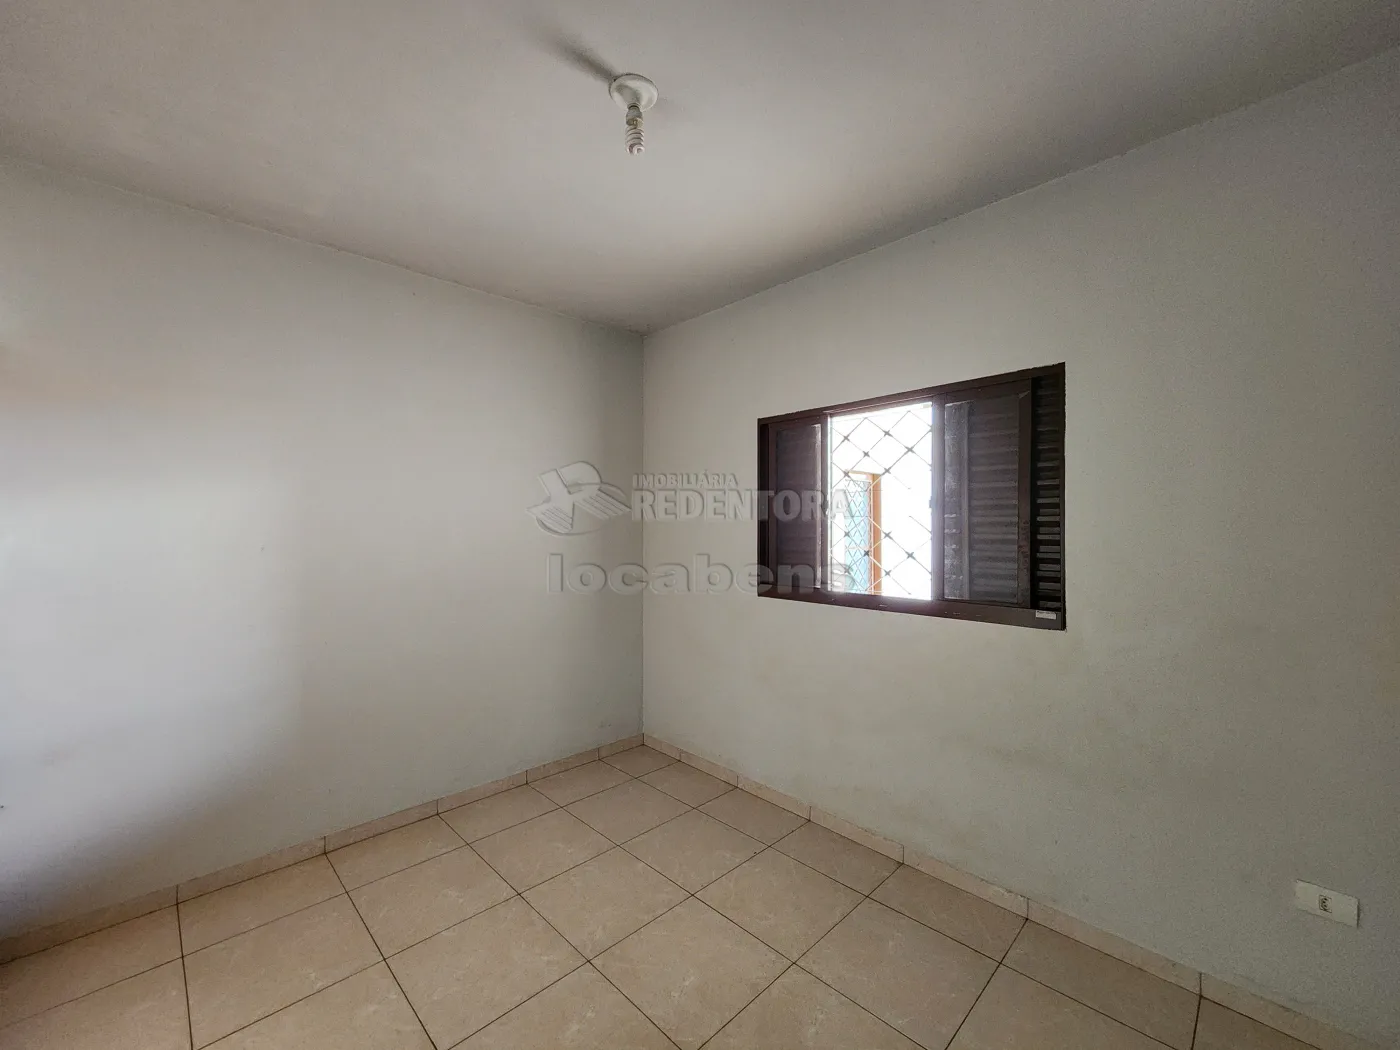 Alugar Casa / Padrão em Guapiaçu apenas R$ 1.150,00 - Foto 10